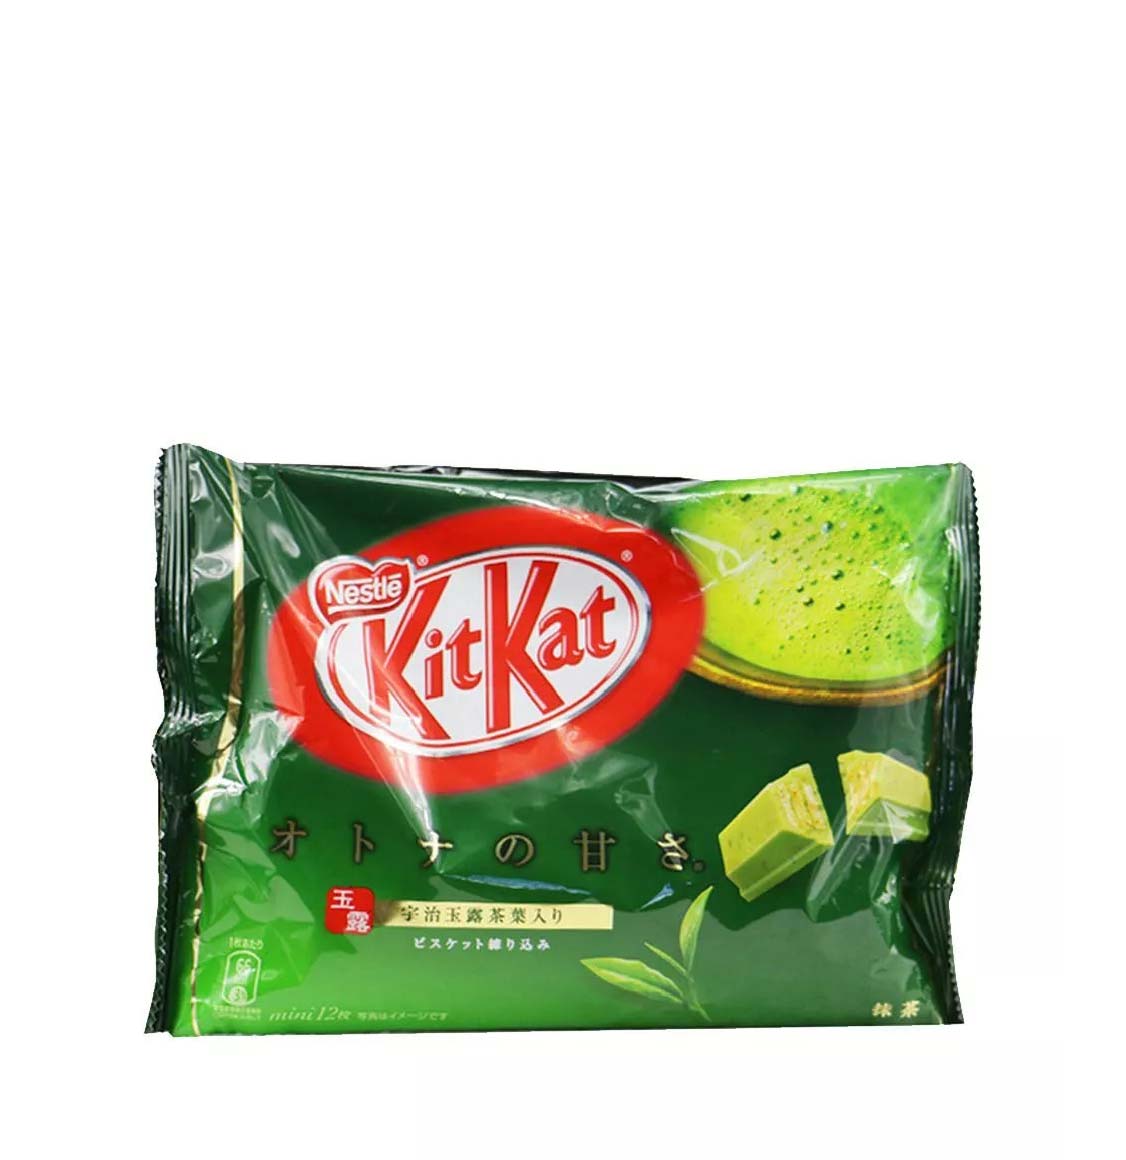 Μini Kit Kat Matcha Green Tea Japanese Edition 135g